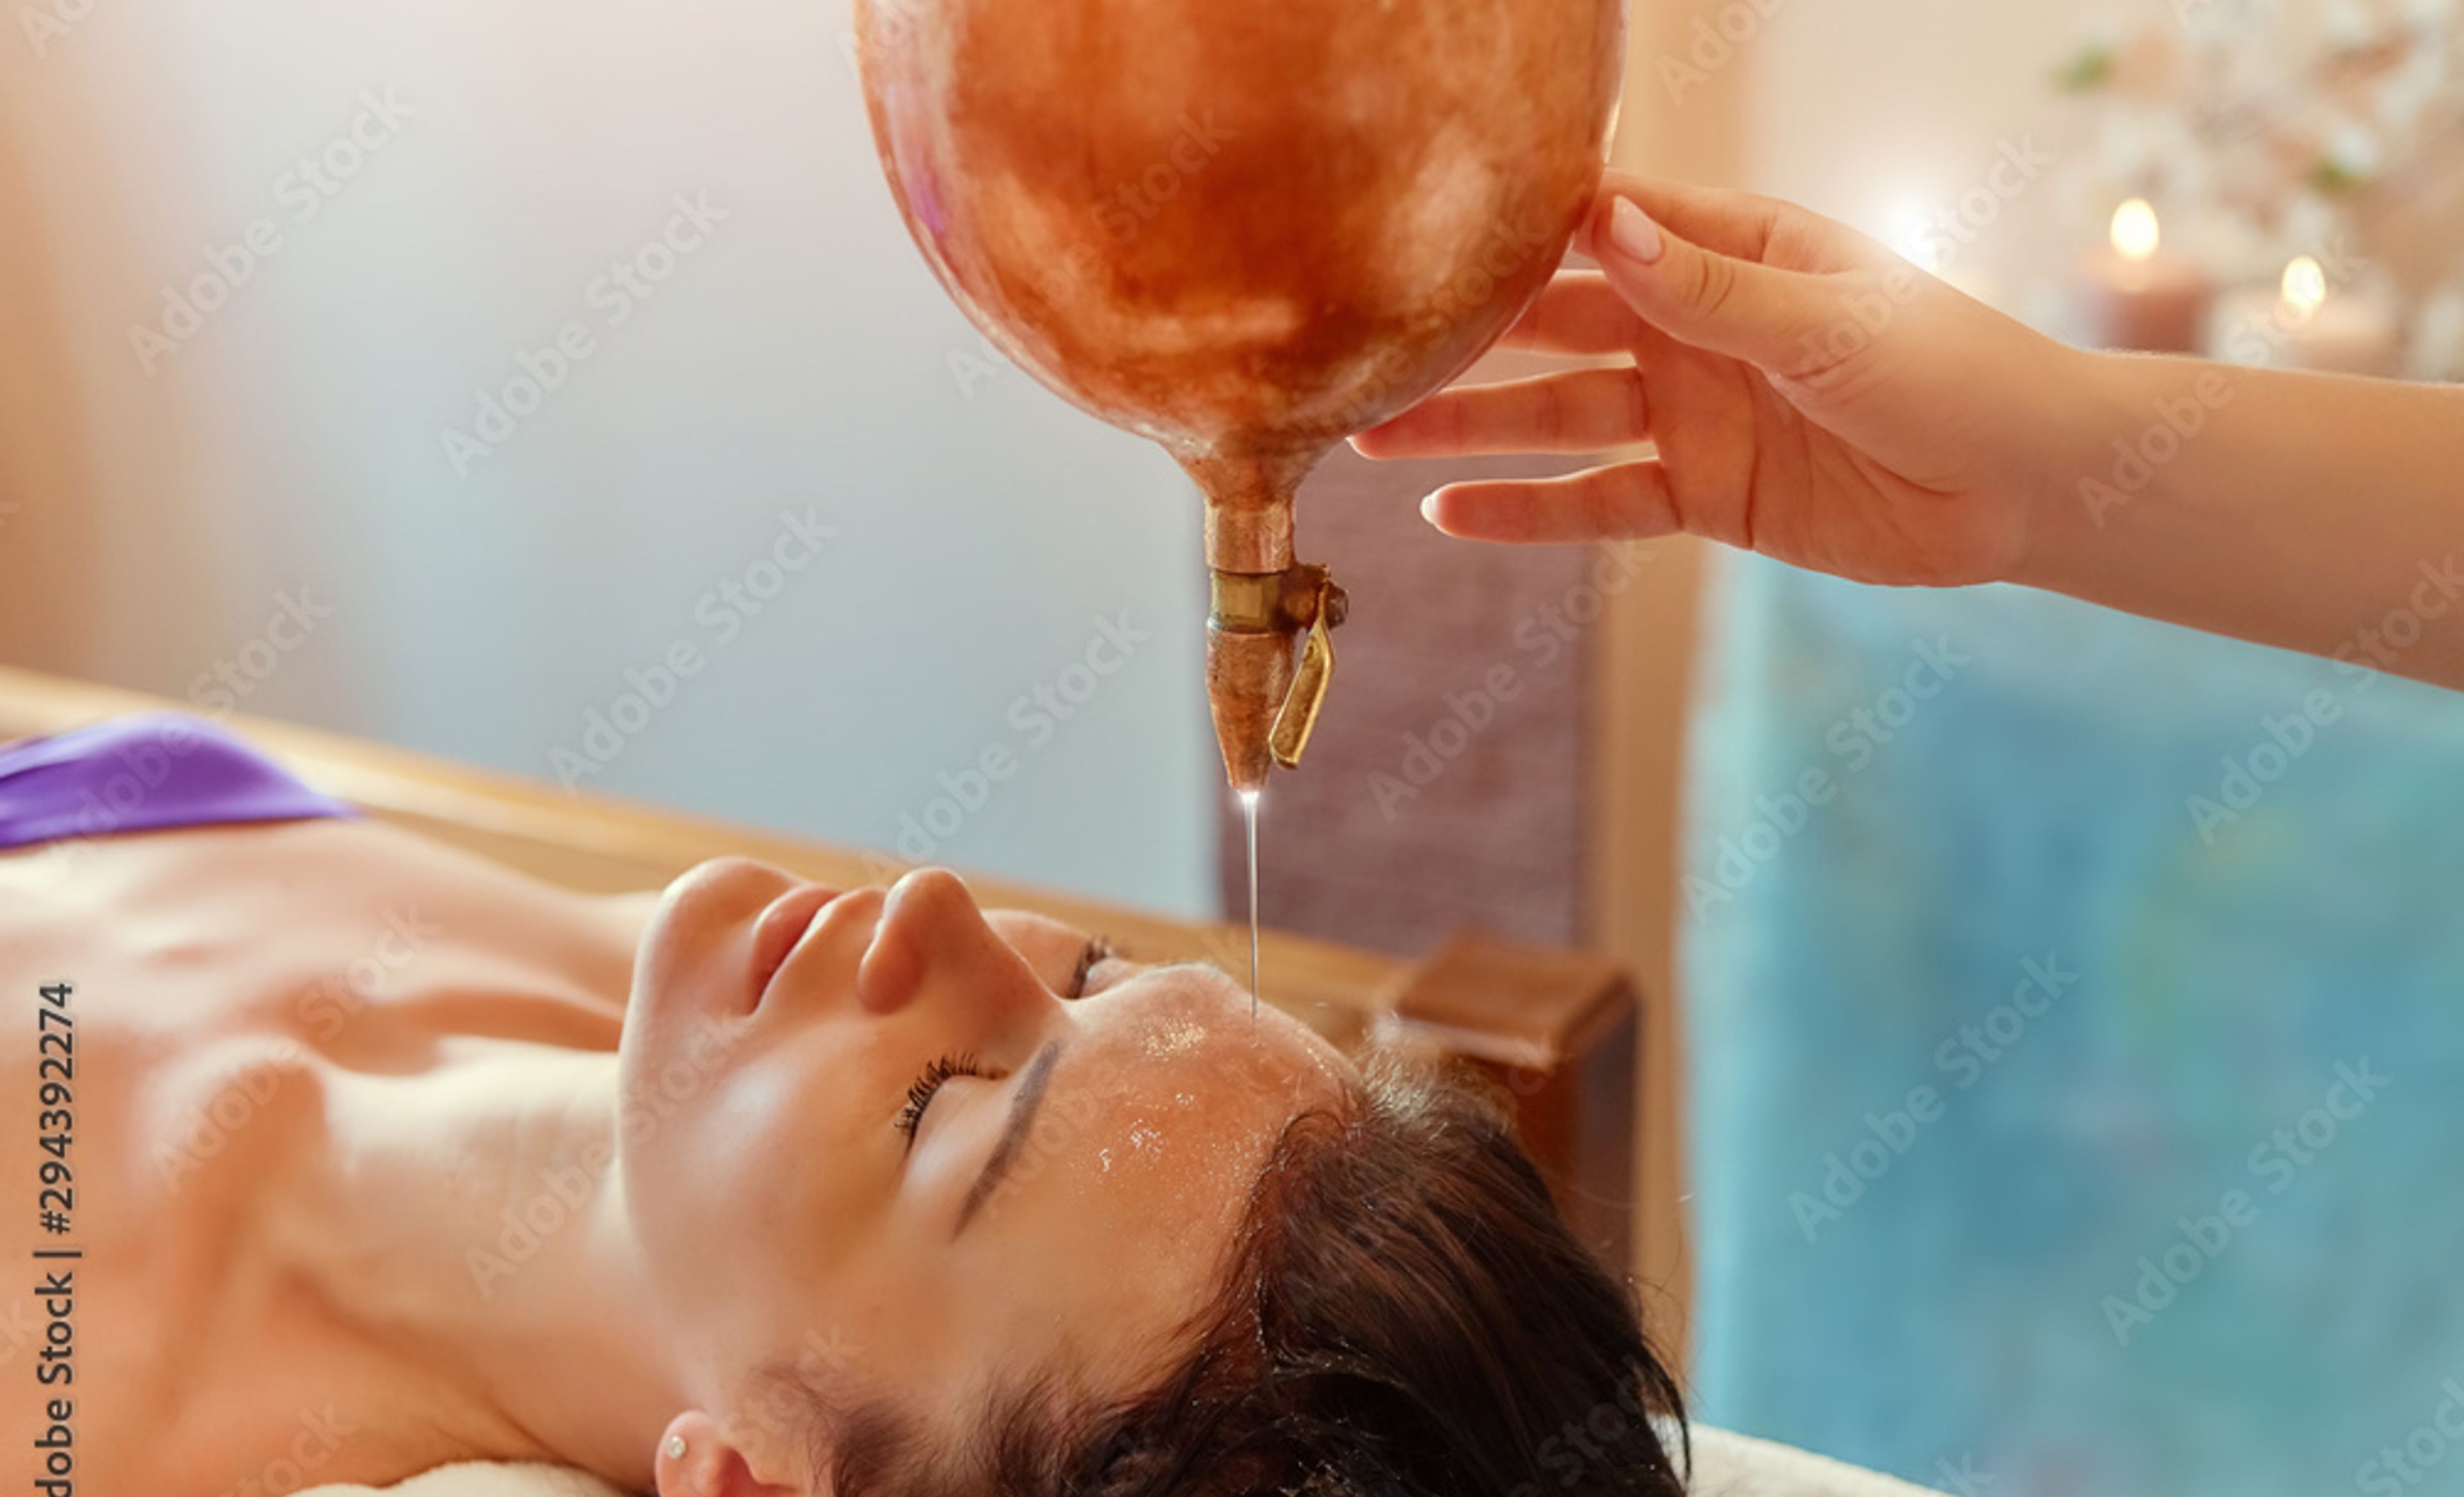 Frau während einer ayurvedischen Behandlung, bei der ihr Öl über das Gesicht gegossen wird.